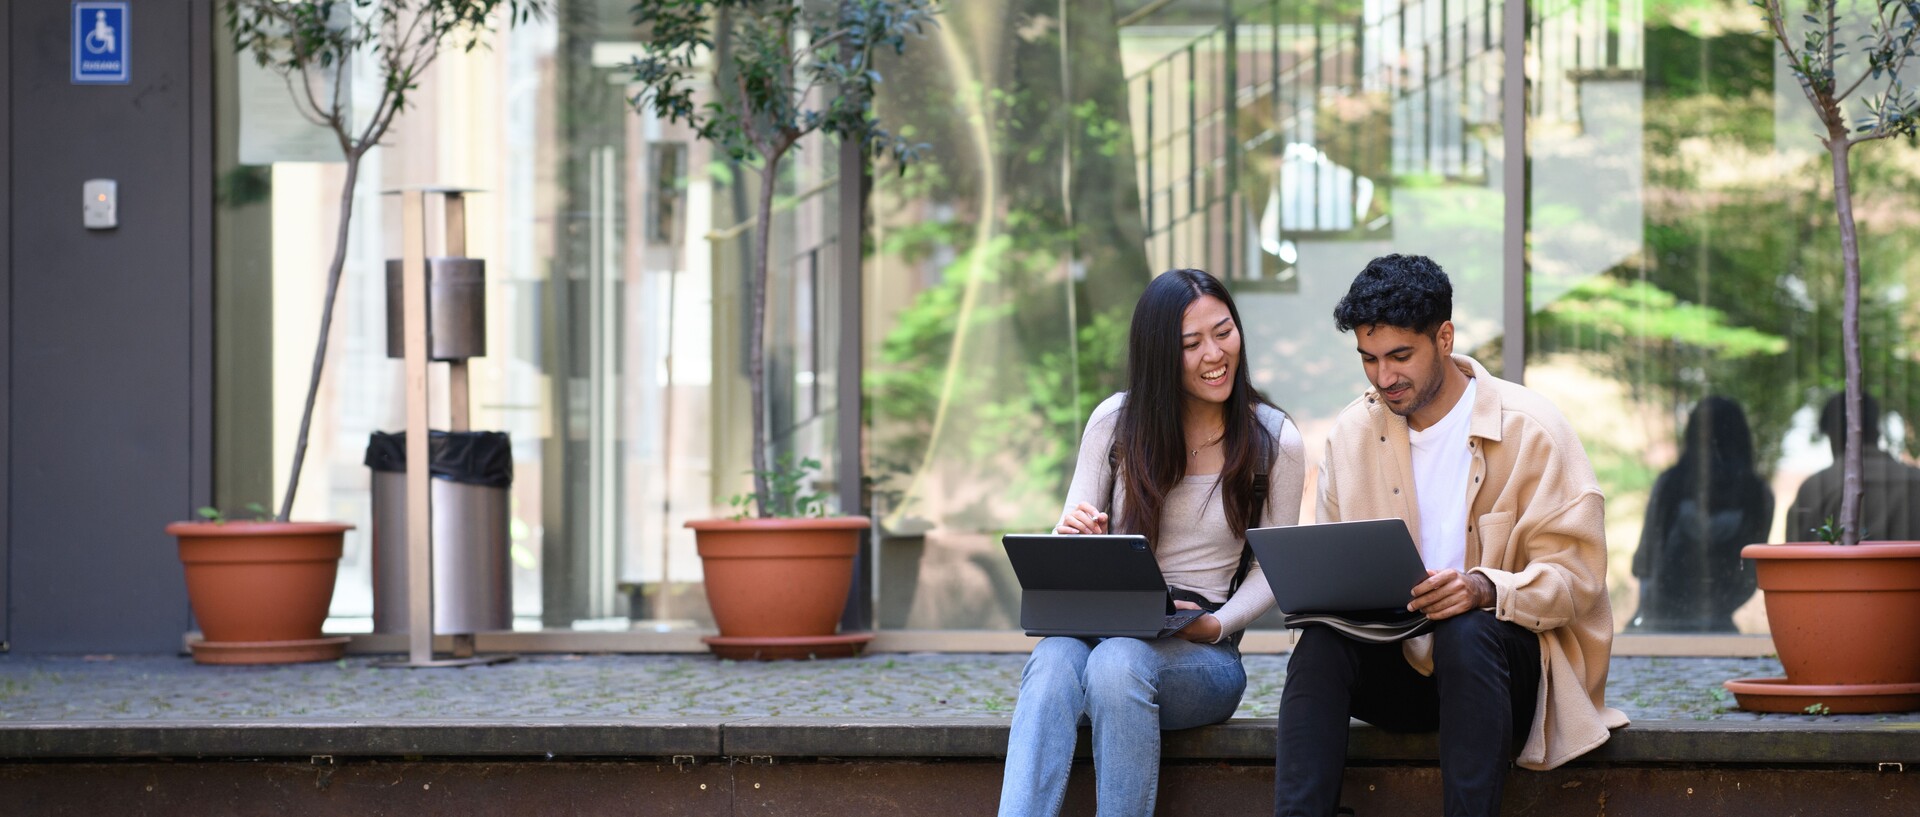 Eine Studentin und ein Student sitzen lachend auf einer Treppe und arbeiten an ihren Laptops.